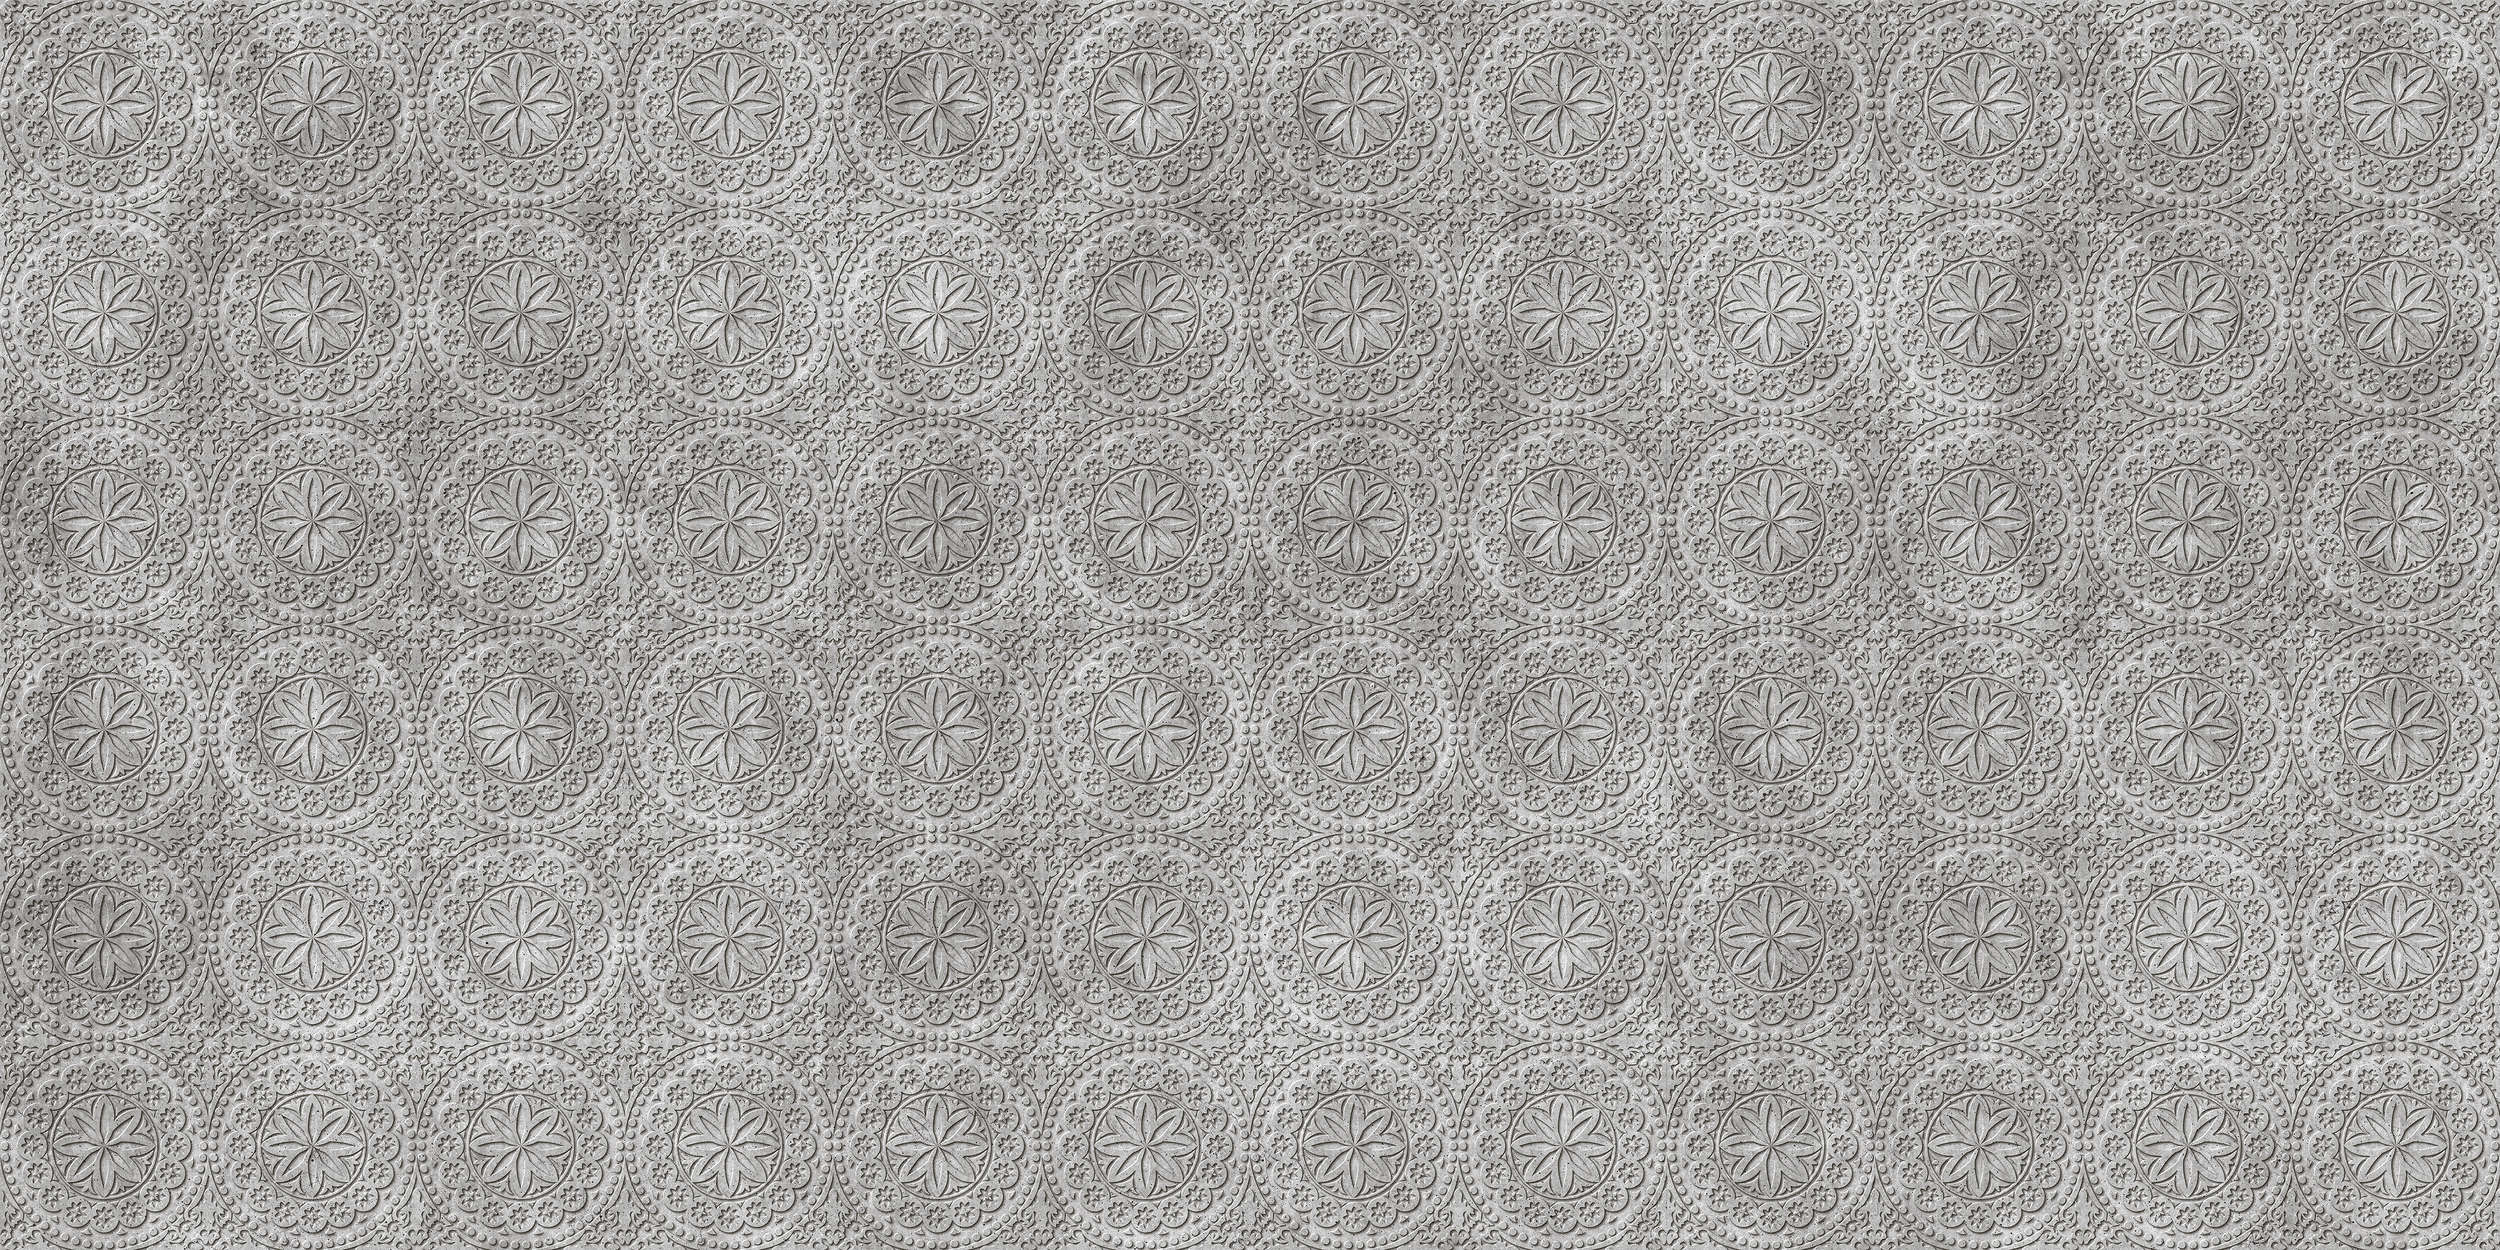             Piastrella 2 - Stampa digitale di fiori di cemento 3D - Grigio, Nero | Pile liscio perlato
        